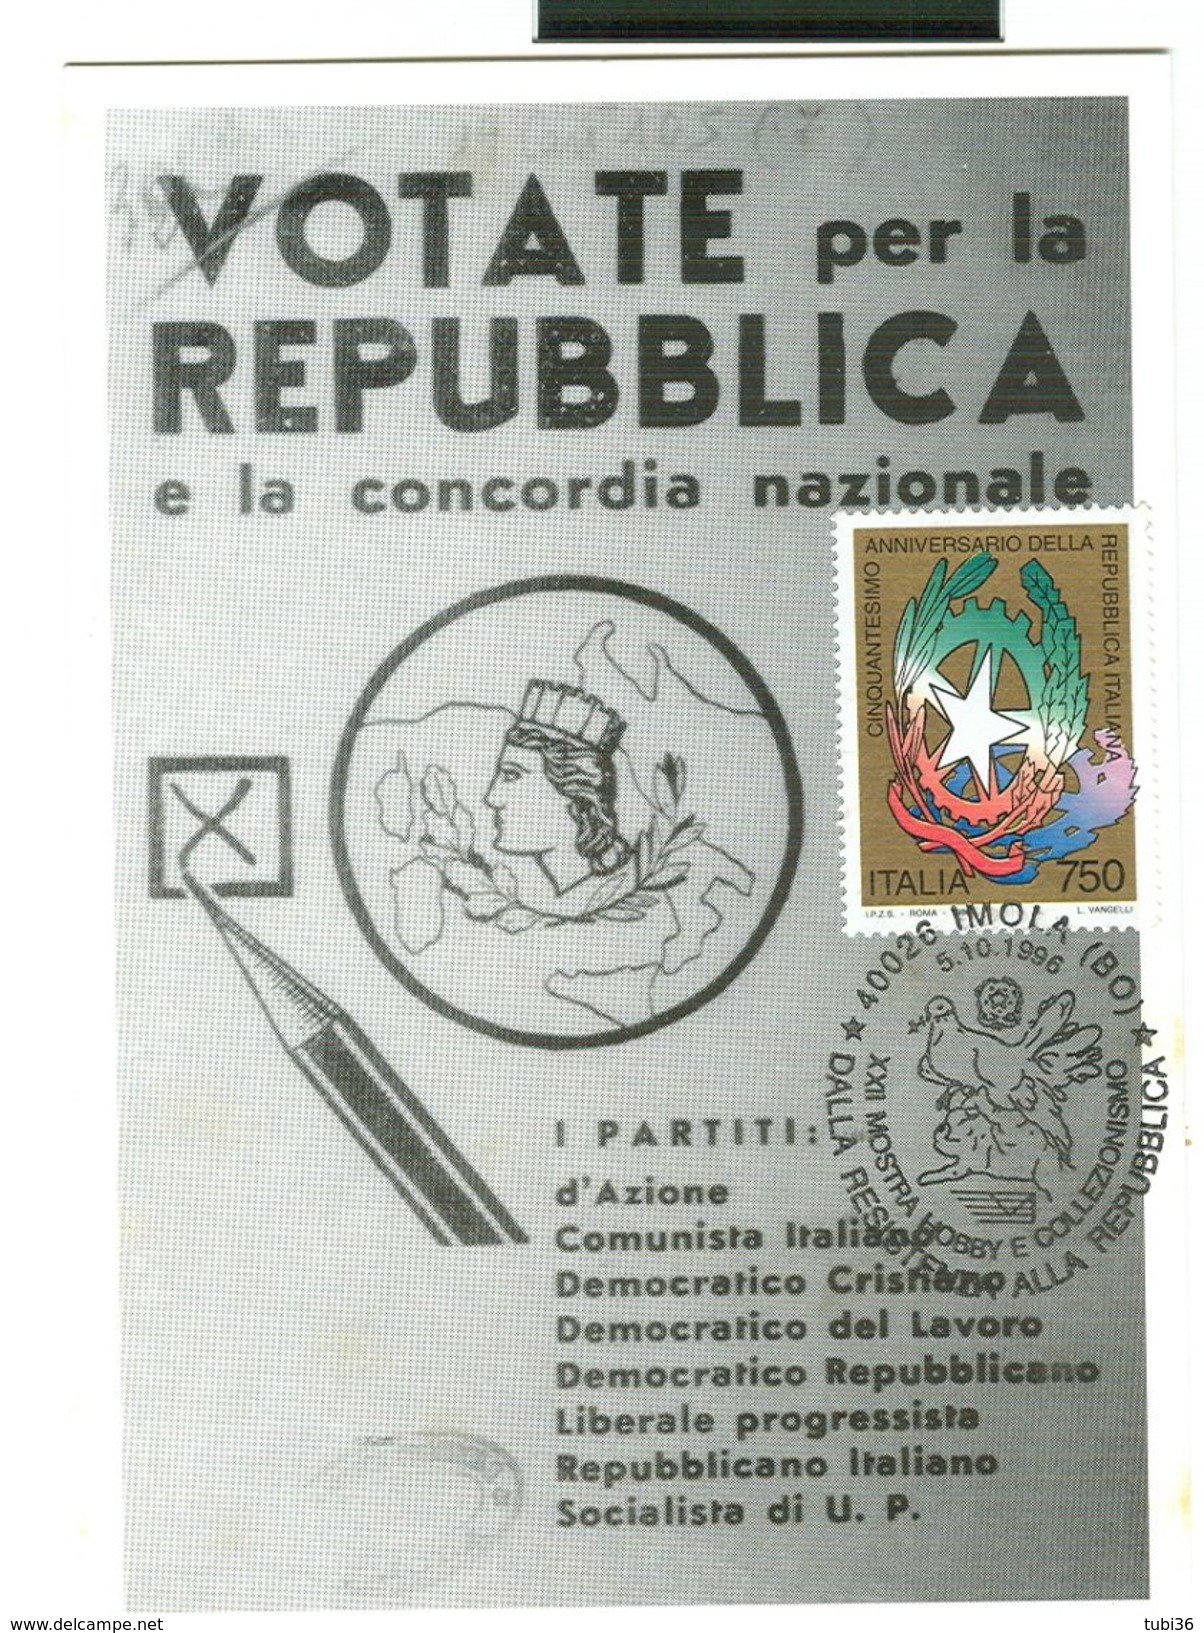 IMOLA (BOLOGNA) "CINQUANTESIMO ANNIVERSARIO DELLA REPUBBLICA" 1996, ANNULLO SPECIALE FIGURATO SU CARTOLINE DEDICATE, - 1981-90: Storia Postale